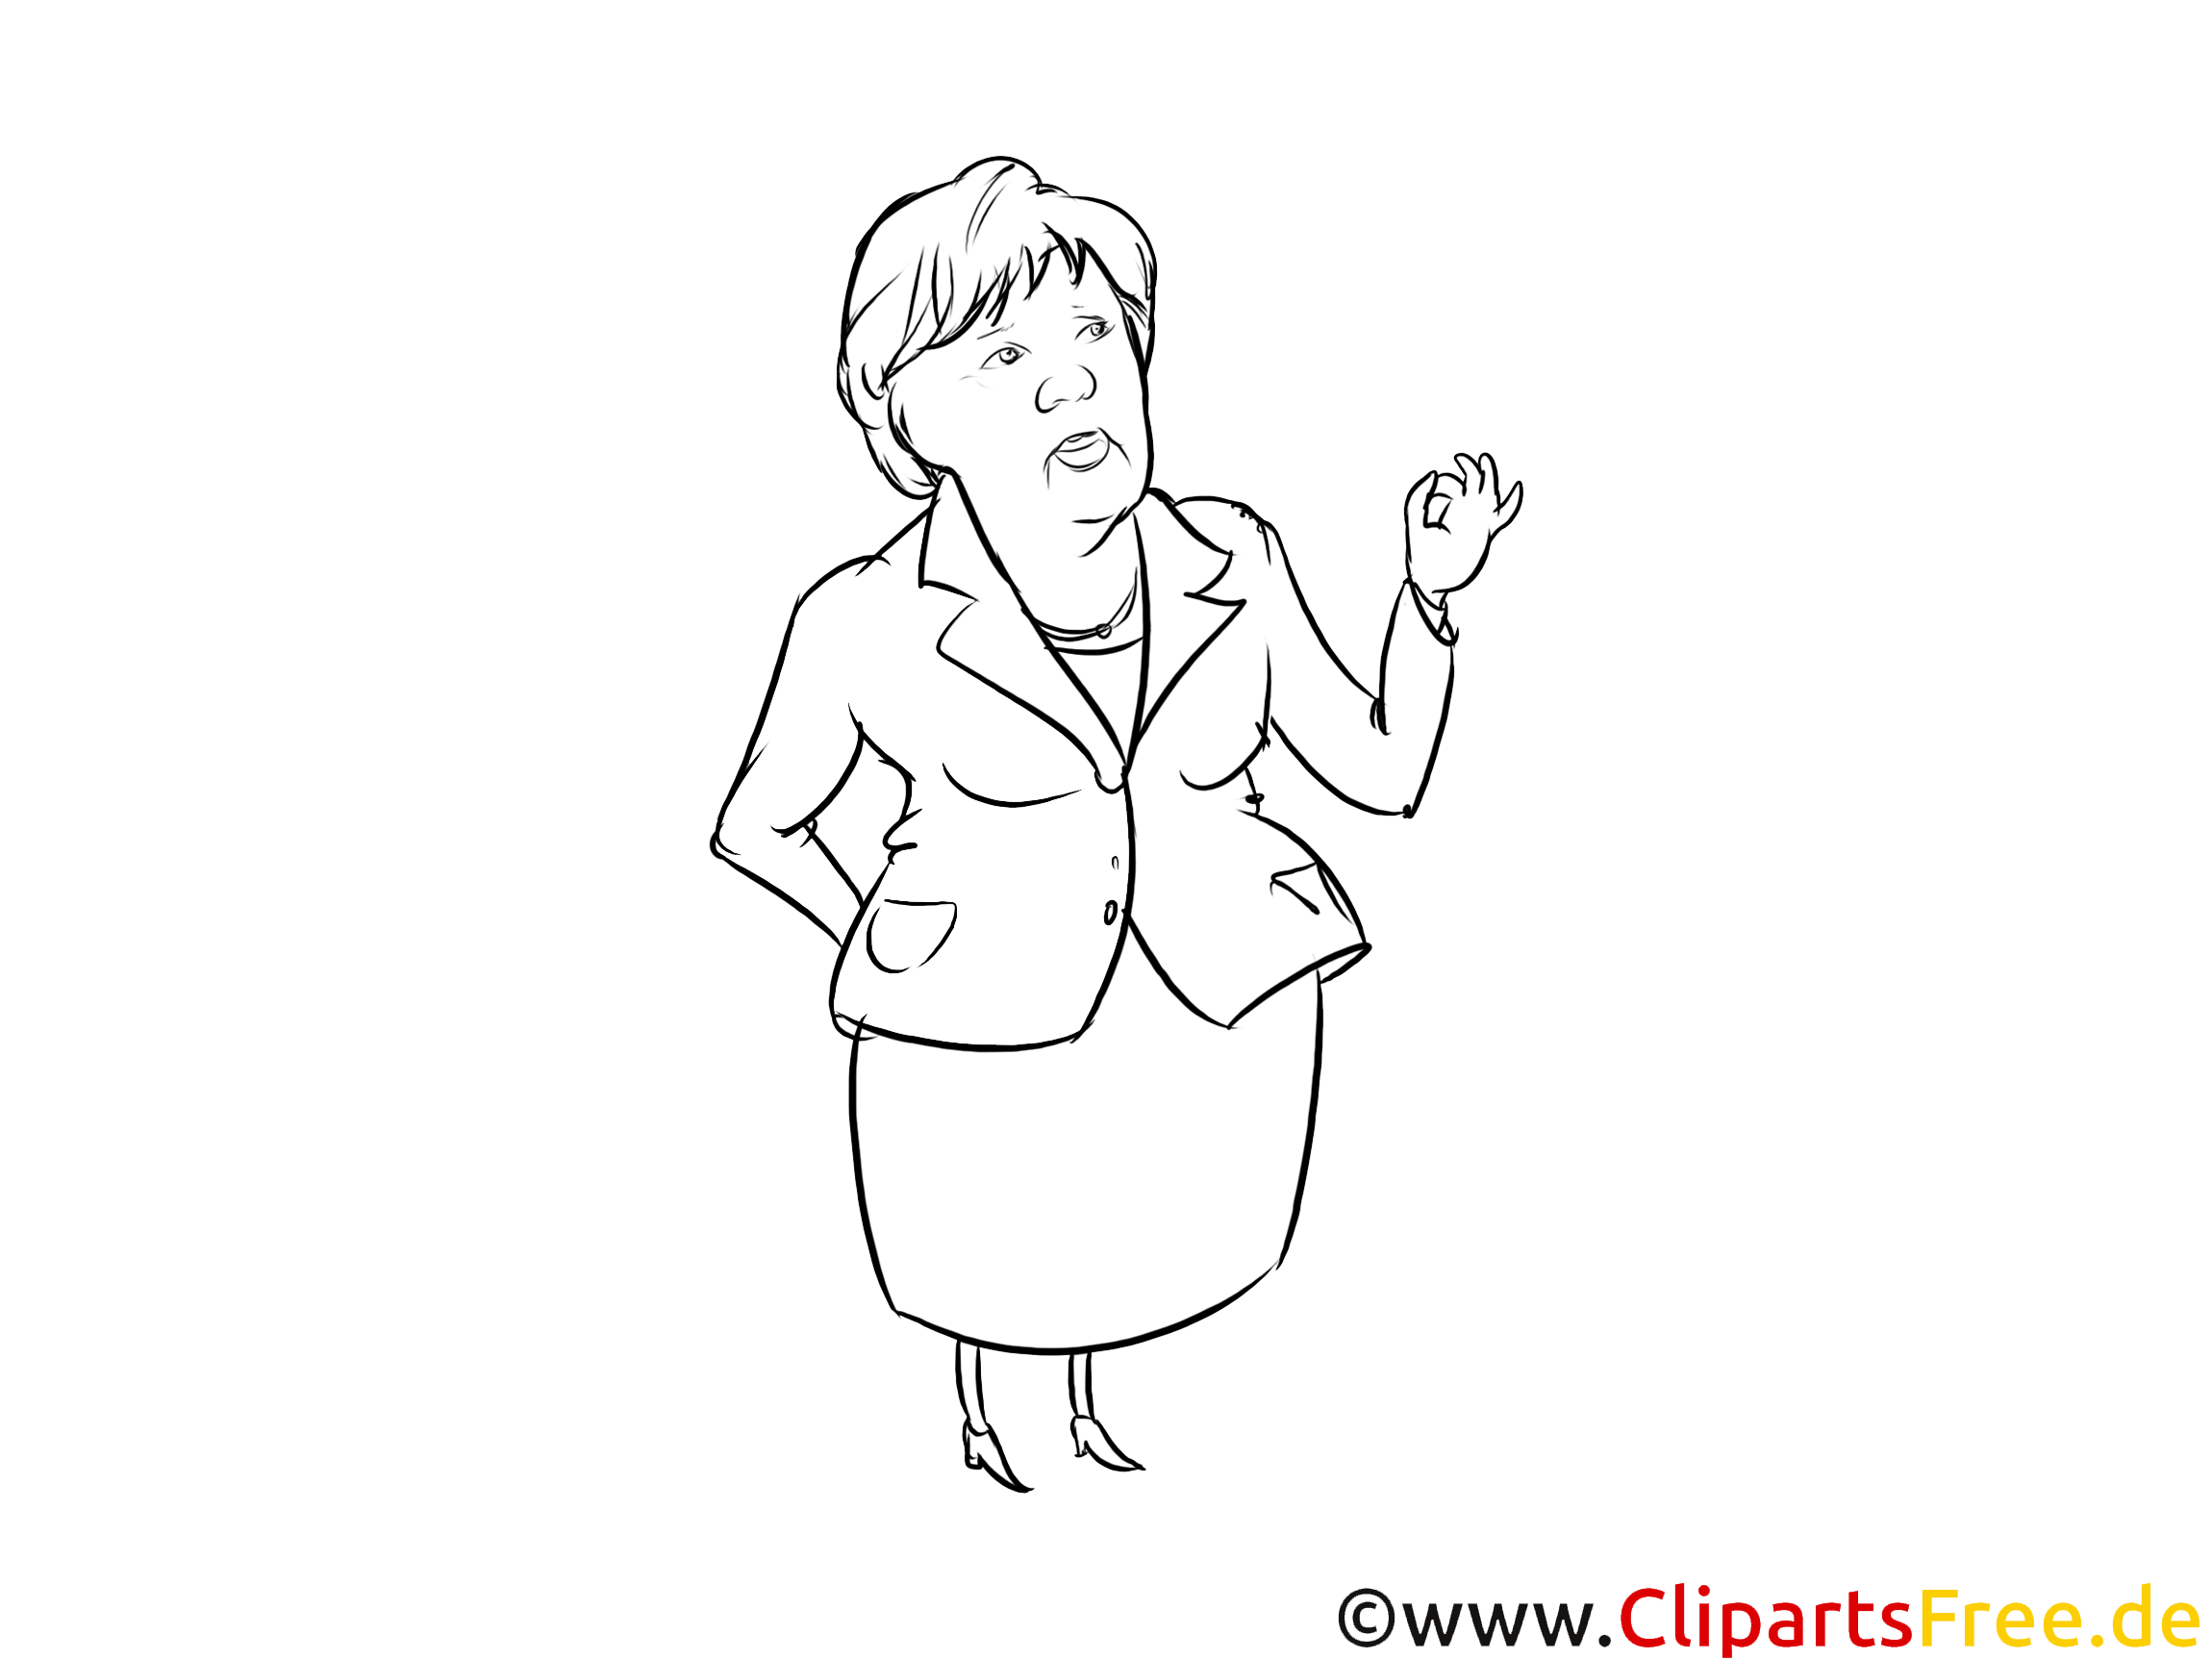 ʻO ke kiʻi ʻoniʻoni ʻo Angela Merkel, caricature, ʻeleʻele a keʻokeʻo ...